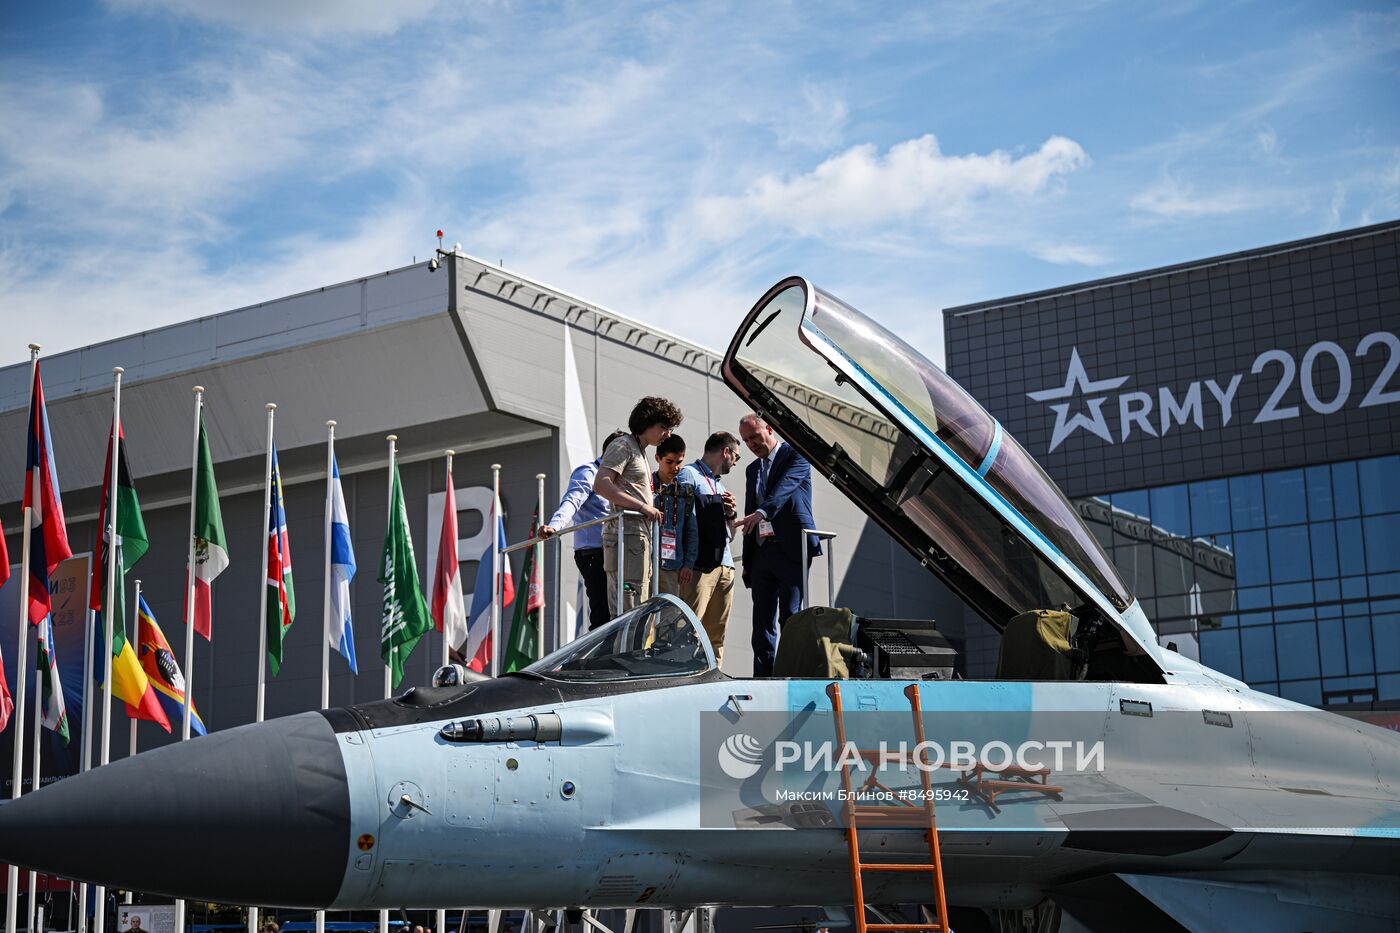 Международный военно-технический форум "АРМИЯ-2023"